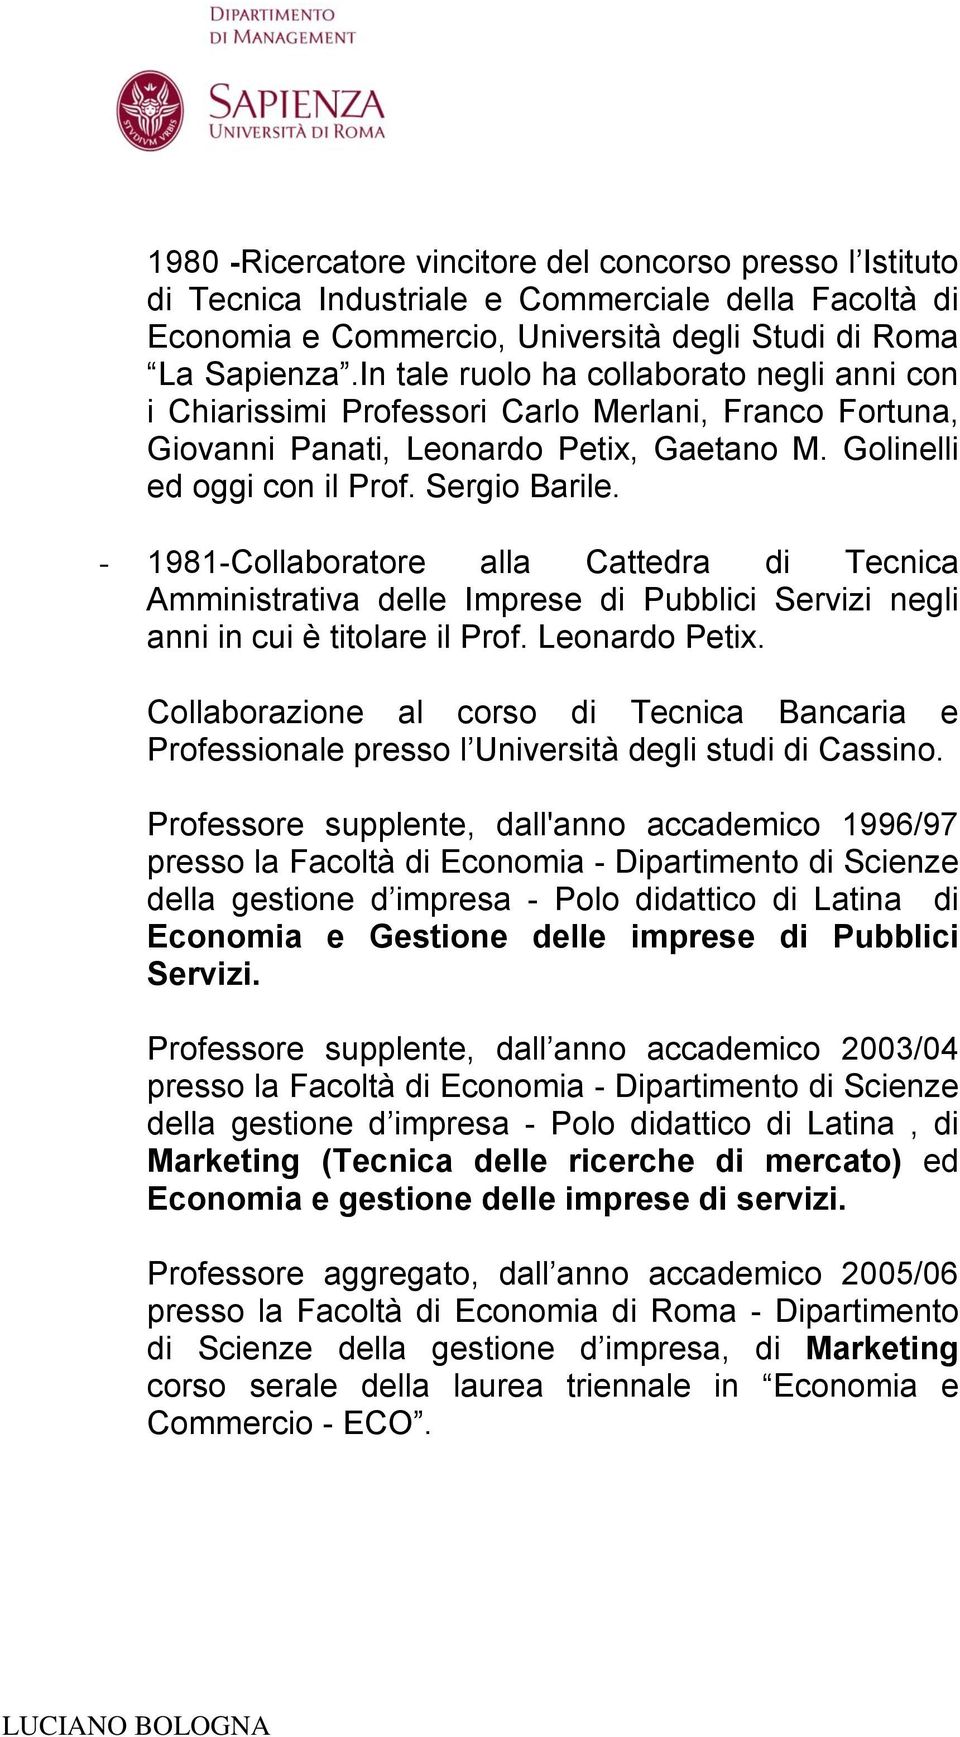 - 1981-Collaboratore alla Cattedra di Tecnica Amministrativa delle Imprese di Pubblici Servizi negli anni in cui è titolare il Prof. Leonardo Petix.